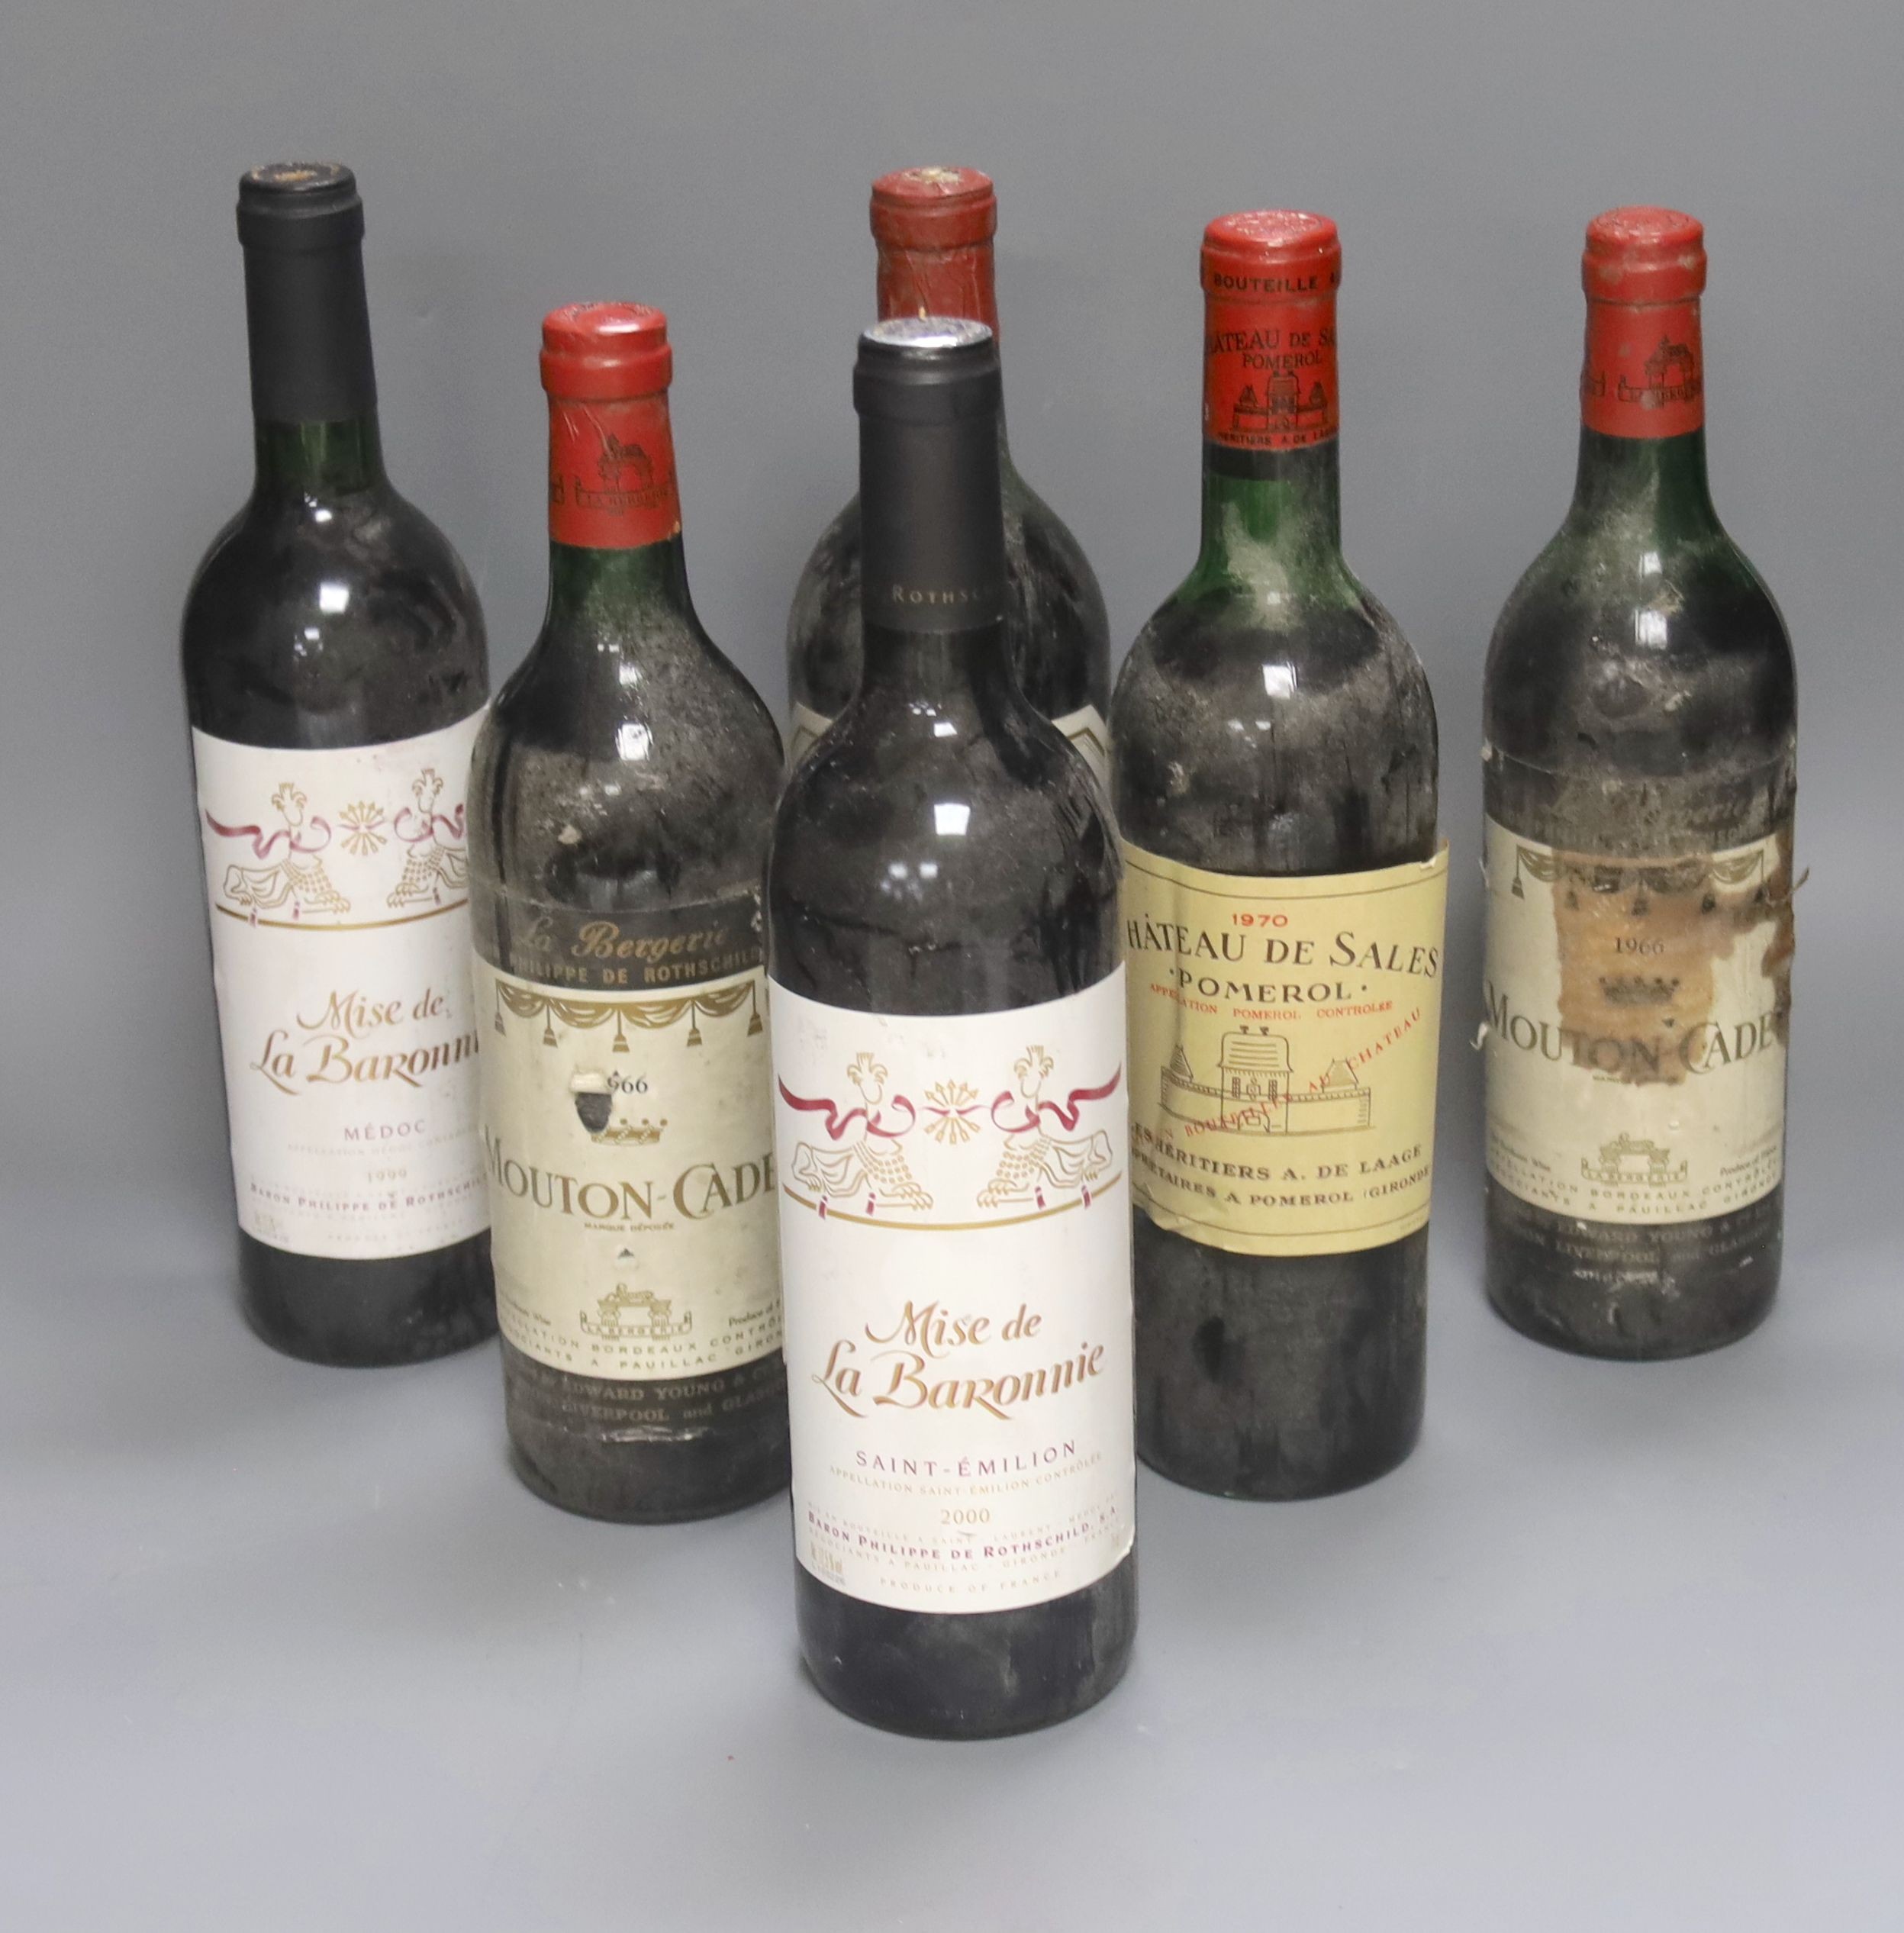 Six Bordeaux wines including Mise de La Baronnie, 1999 & 2000, two Mouton Cadet 1966, one Chateau de Sales, Pomerol, 1970 and one Malleret, 1962